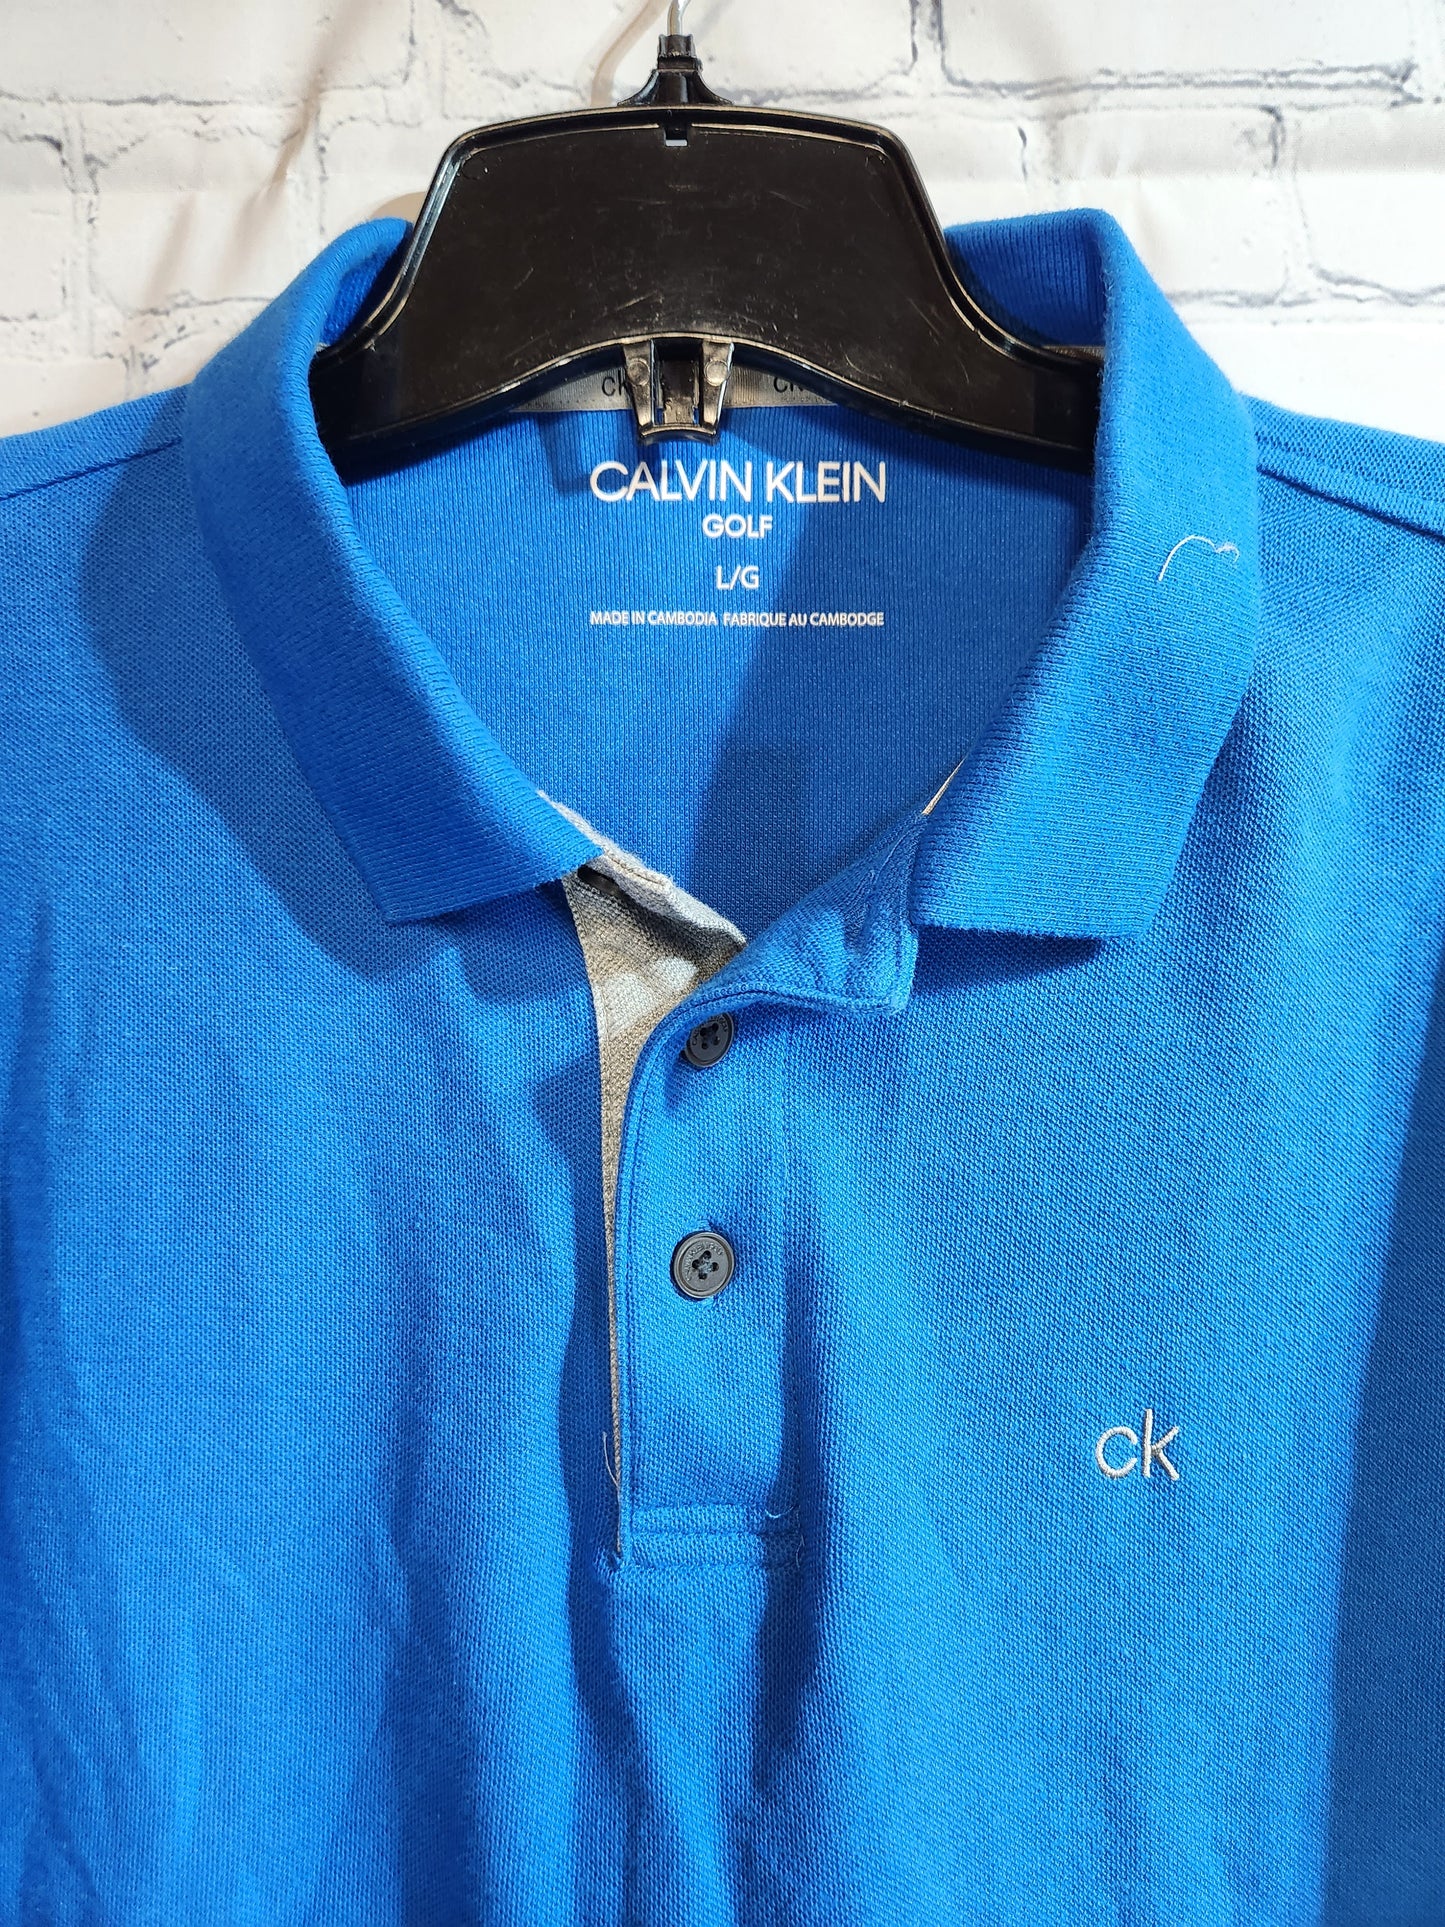 Calvin Klein Men's Golf Polo Blue - Large